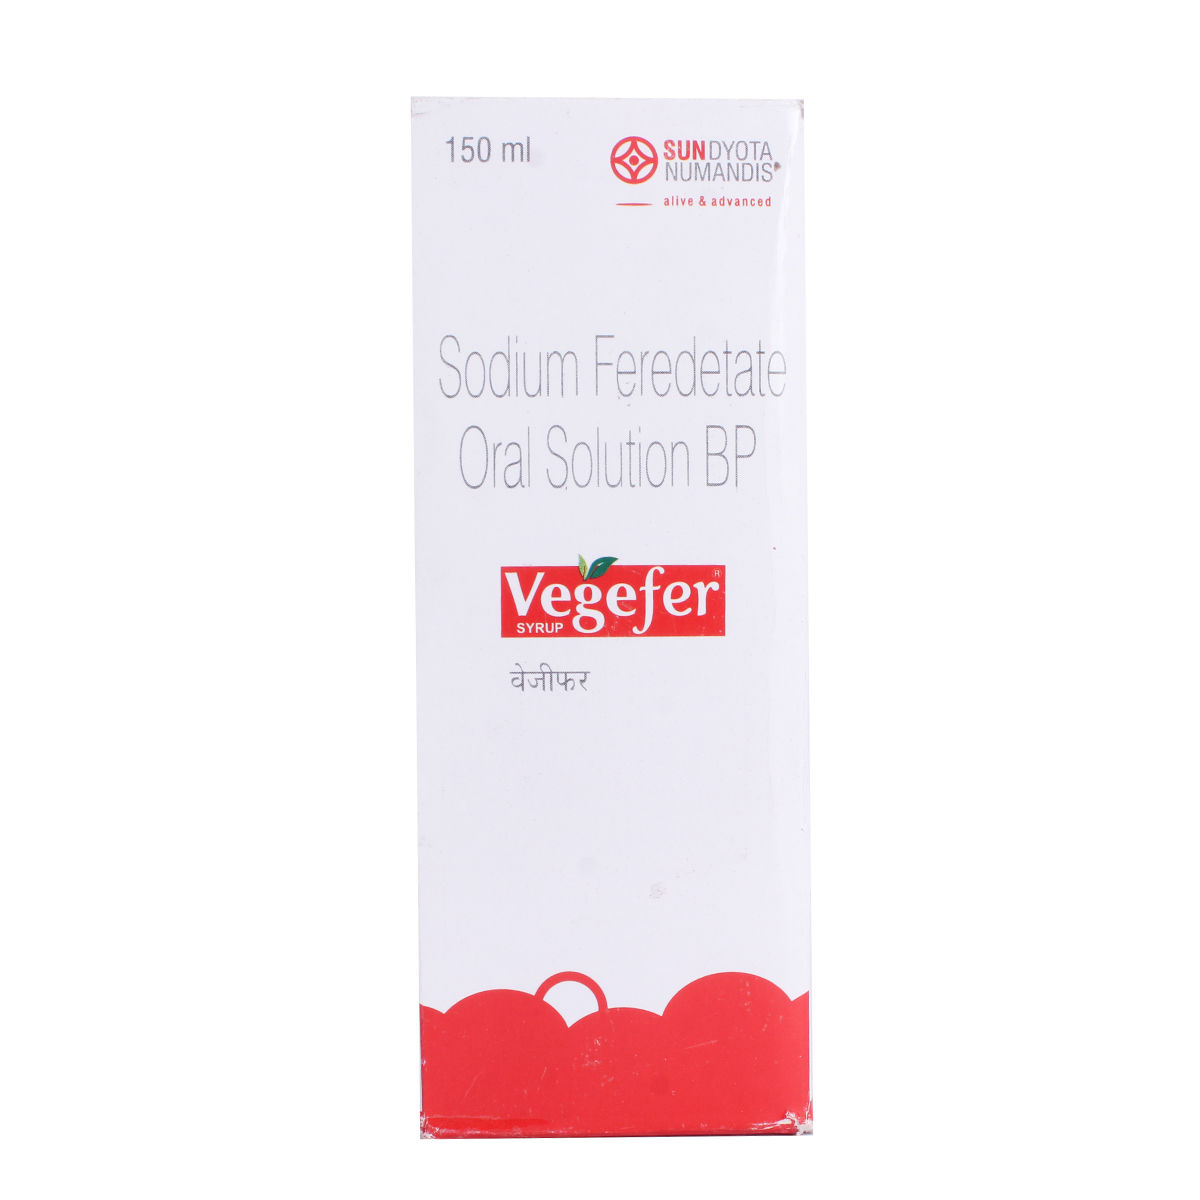 Vegefer Syrup 150 ml, Pack of 1 Solution